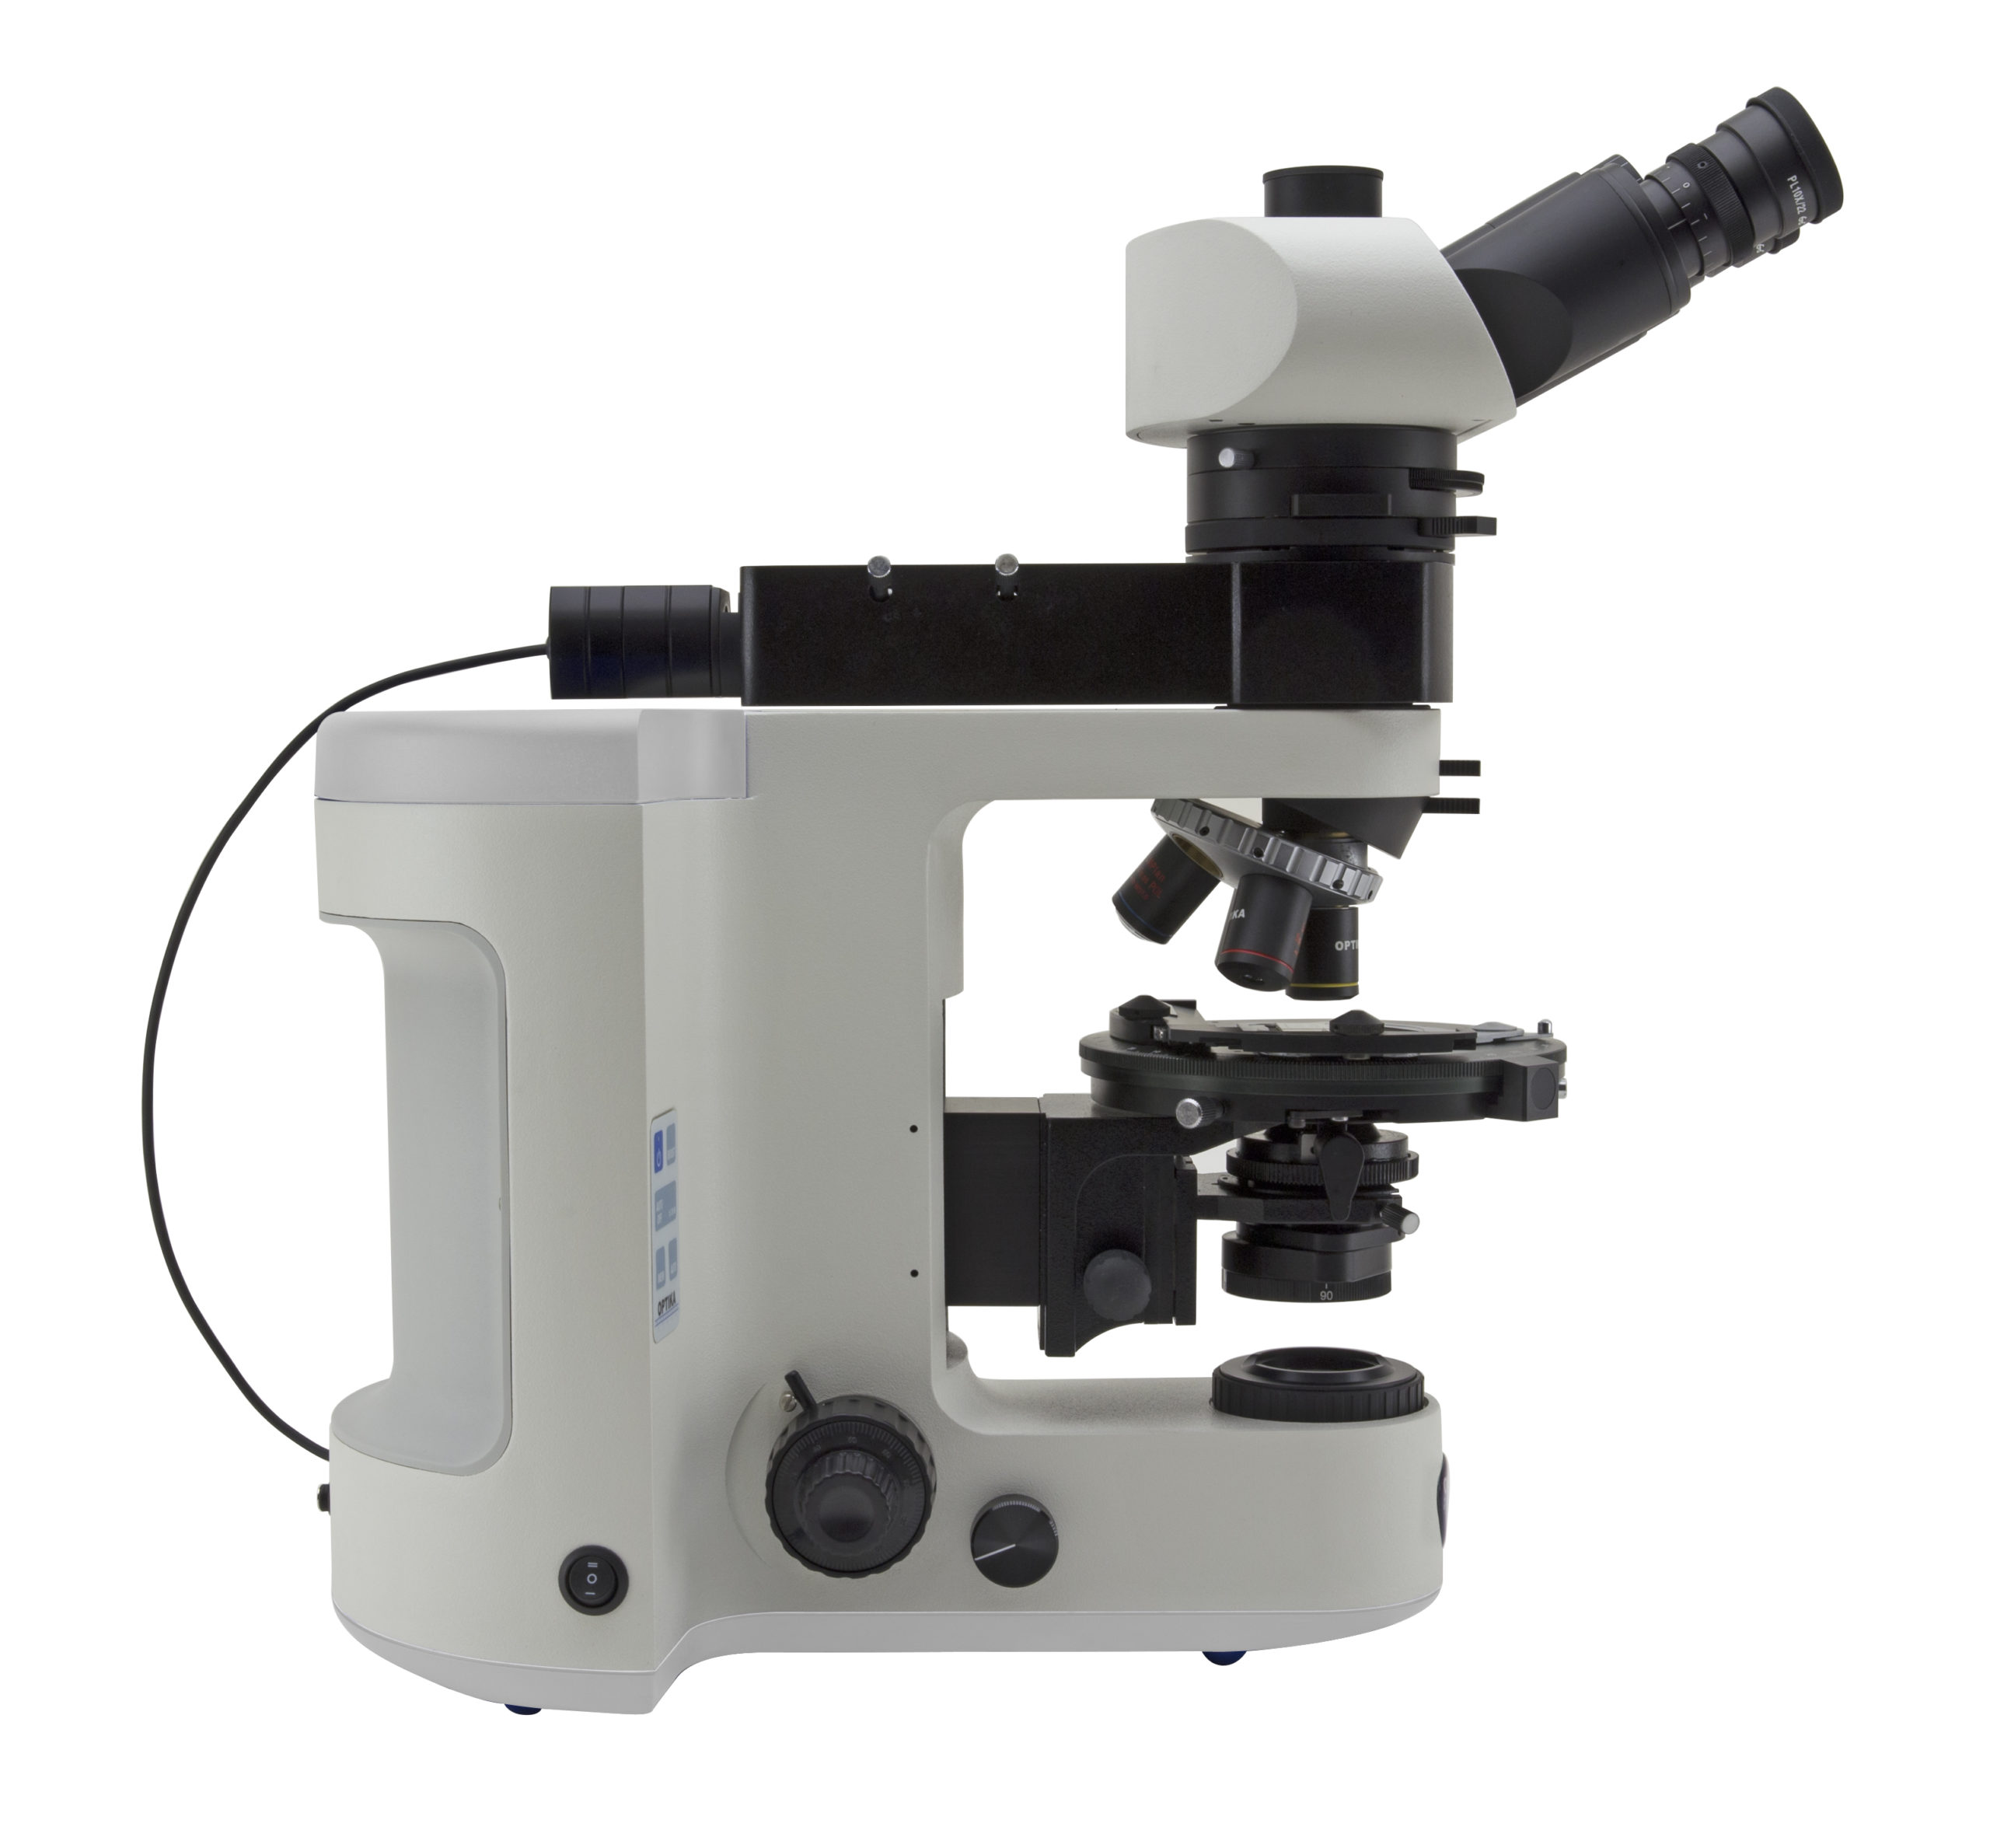 B-1000POL-widok na mikroskop z lewej strony